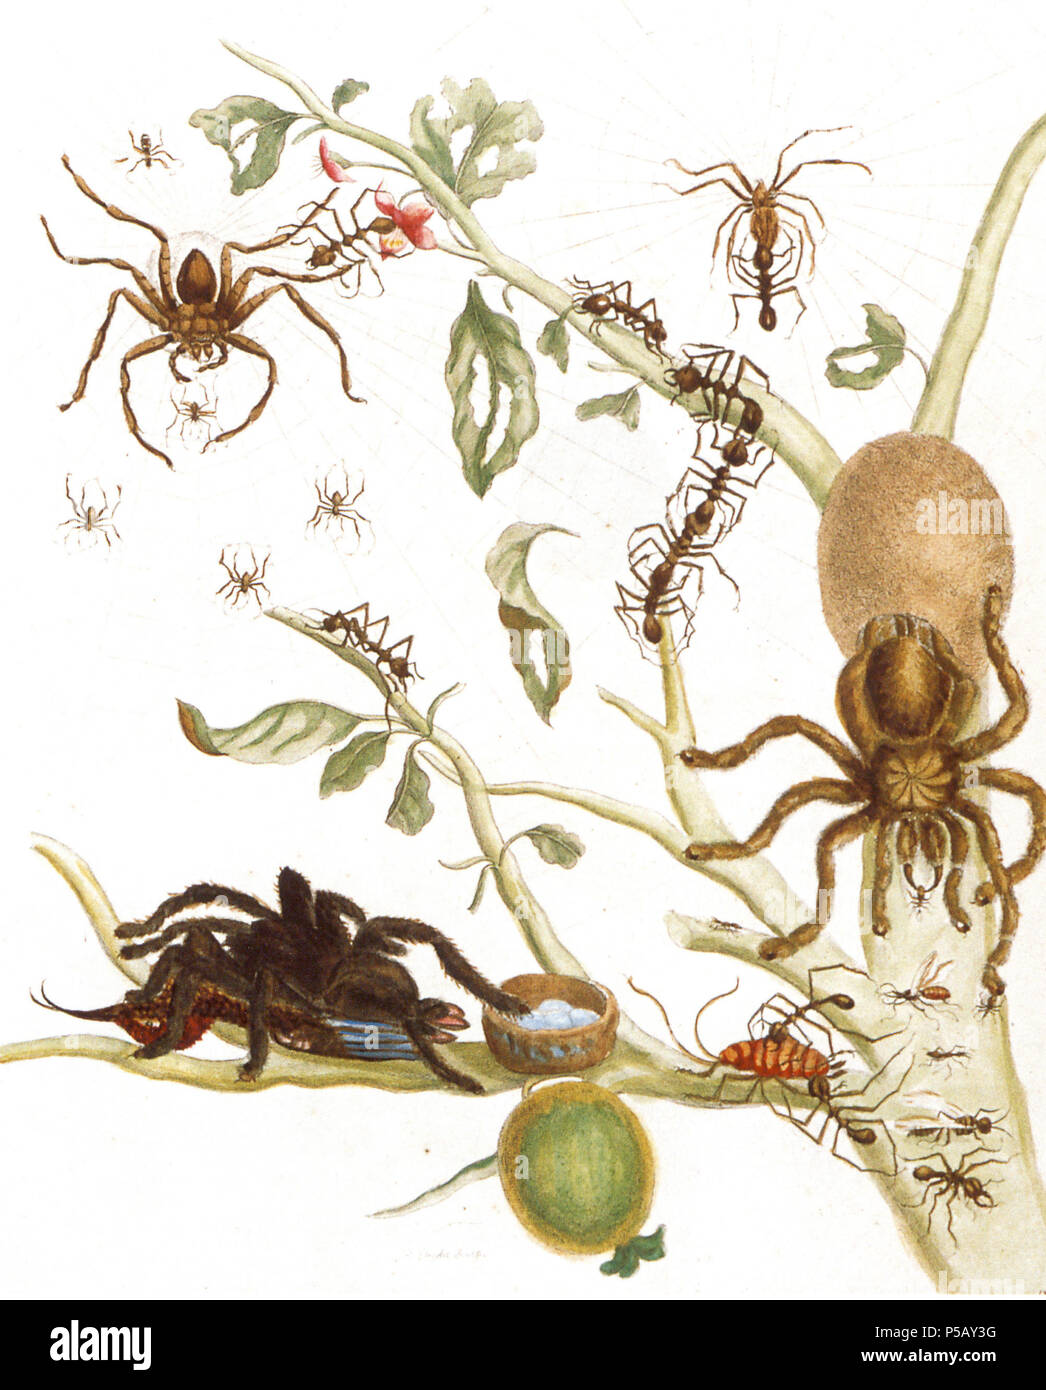 Arañas y hormigas fotografías e imágenes de alta resolución - Alamy